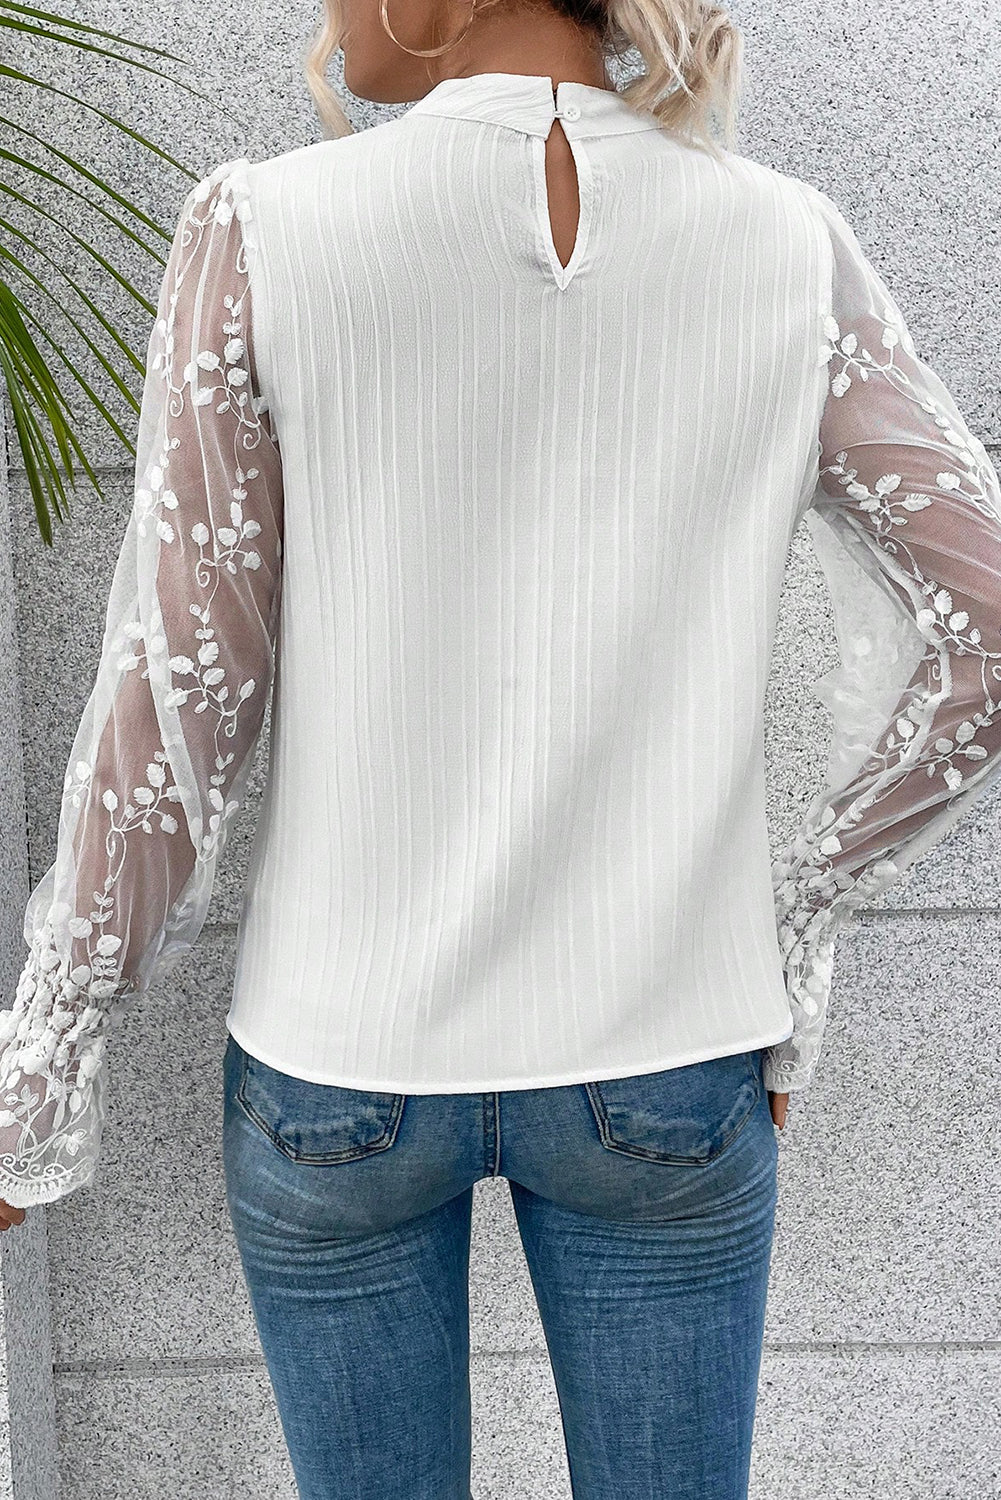 Kontrastna bluza s lažnim izrezom i čipkastim rukavima boje marelice